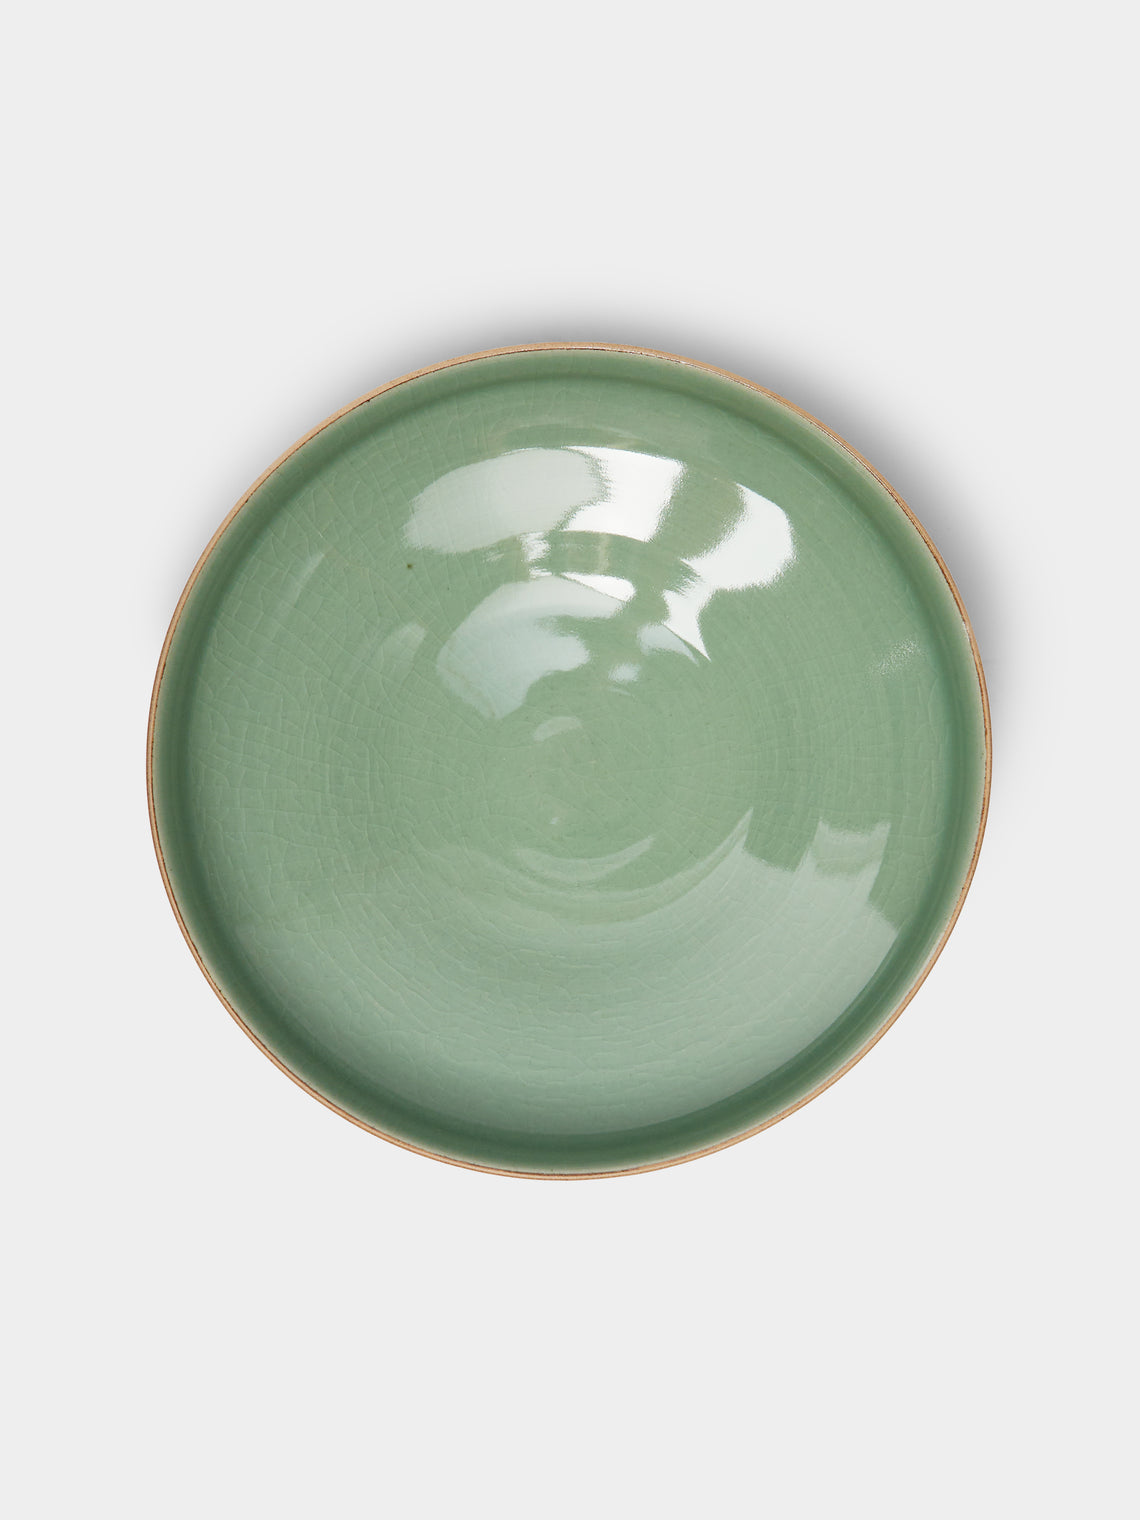 Kim Pan-ki - Comb Pattern Celadon Serving Bowl -  - ABASK